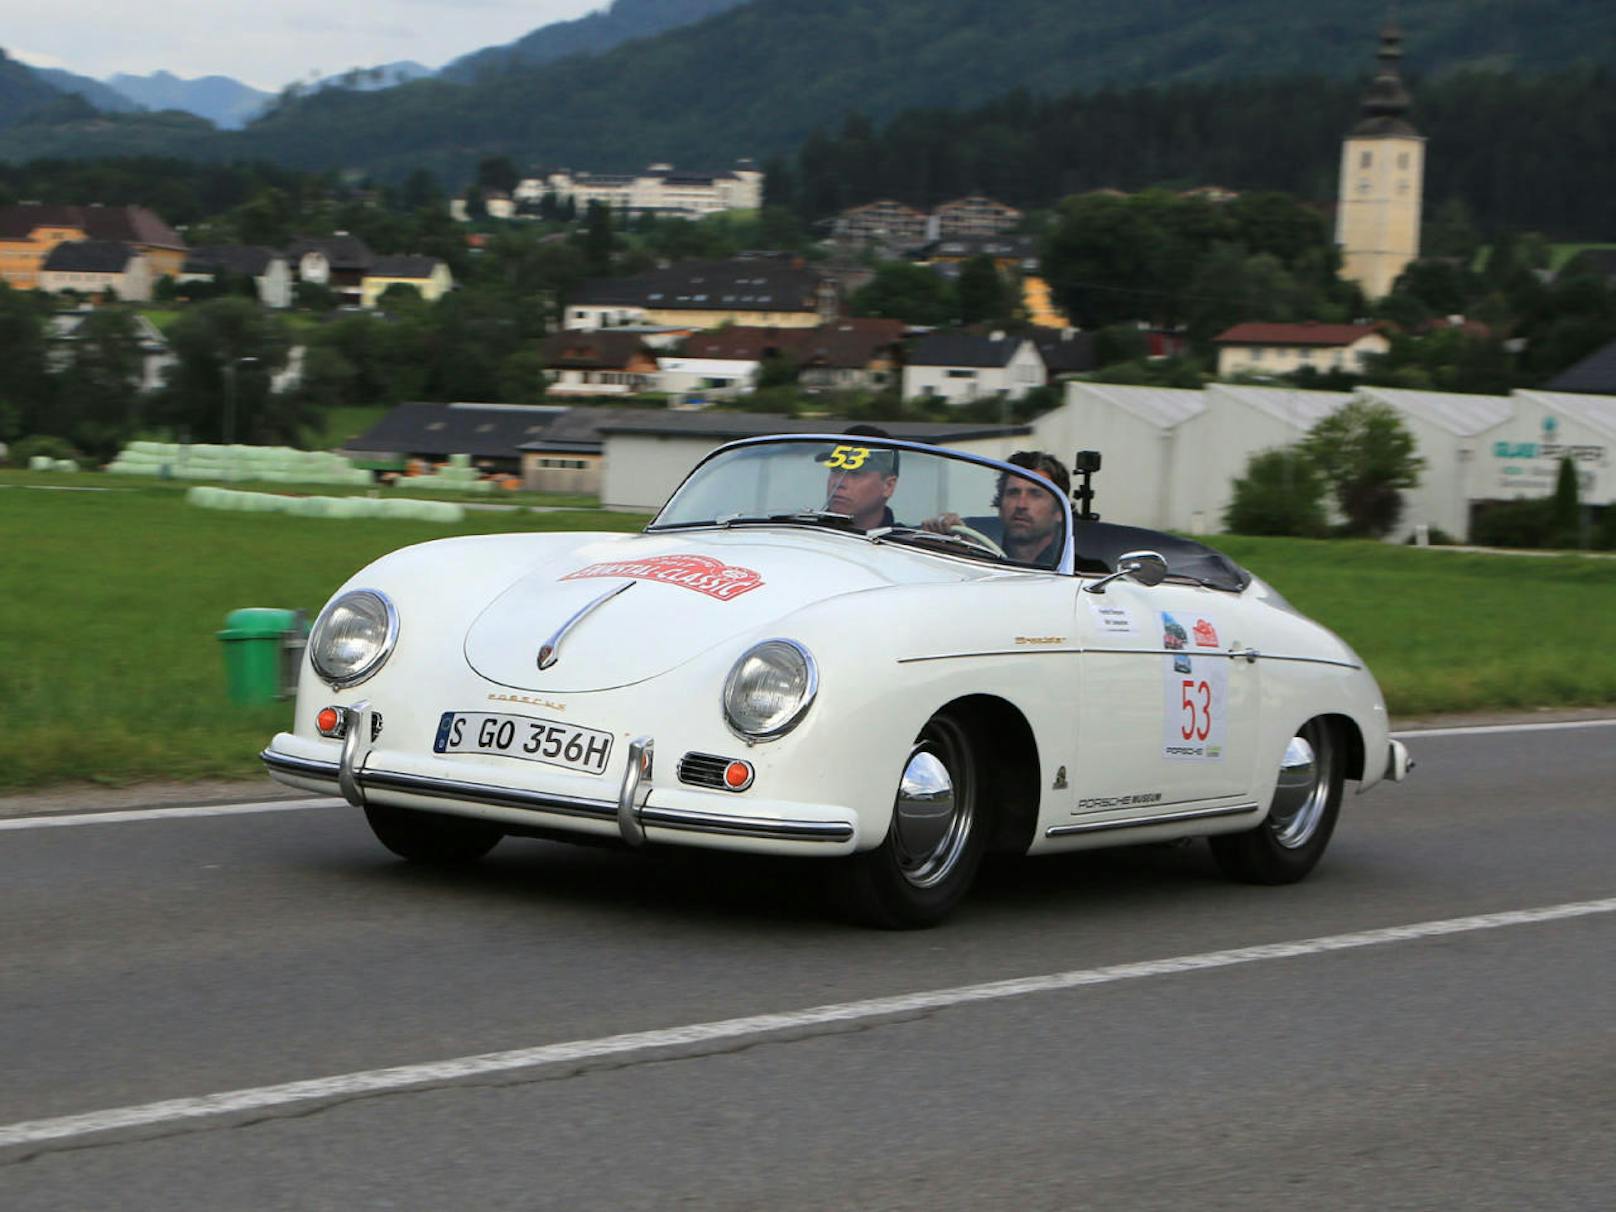 Patrick Dempsey im Porsche 356 Cabrio mit Schloss Pichlarn im Hintergrund